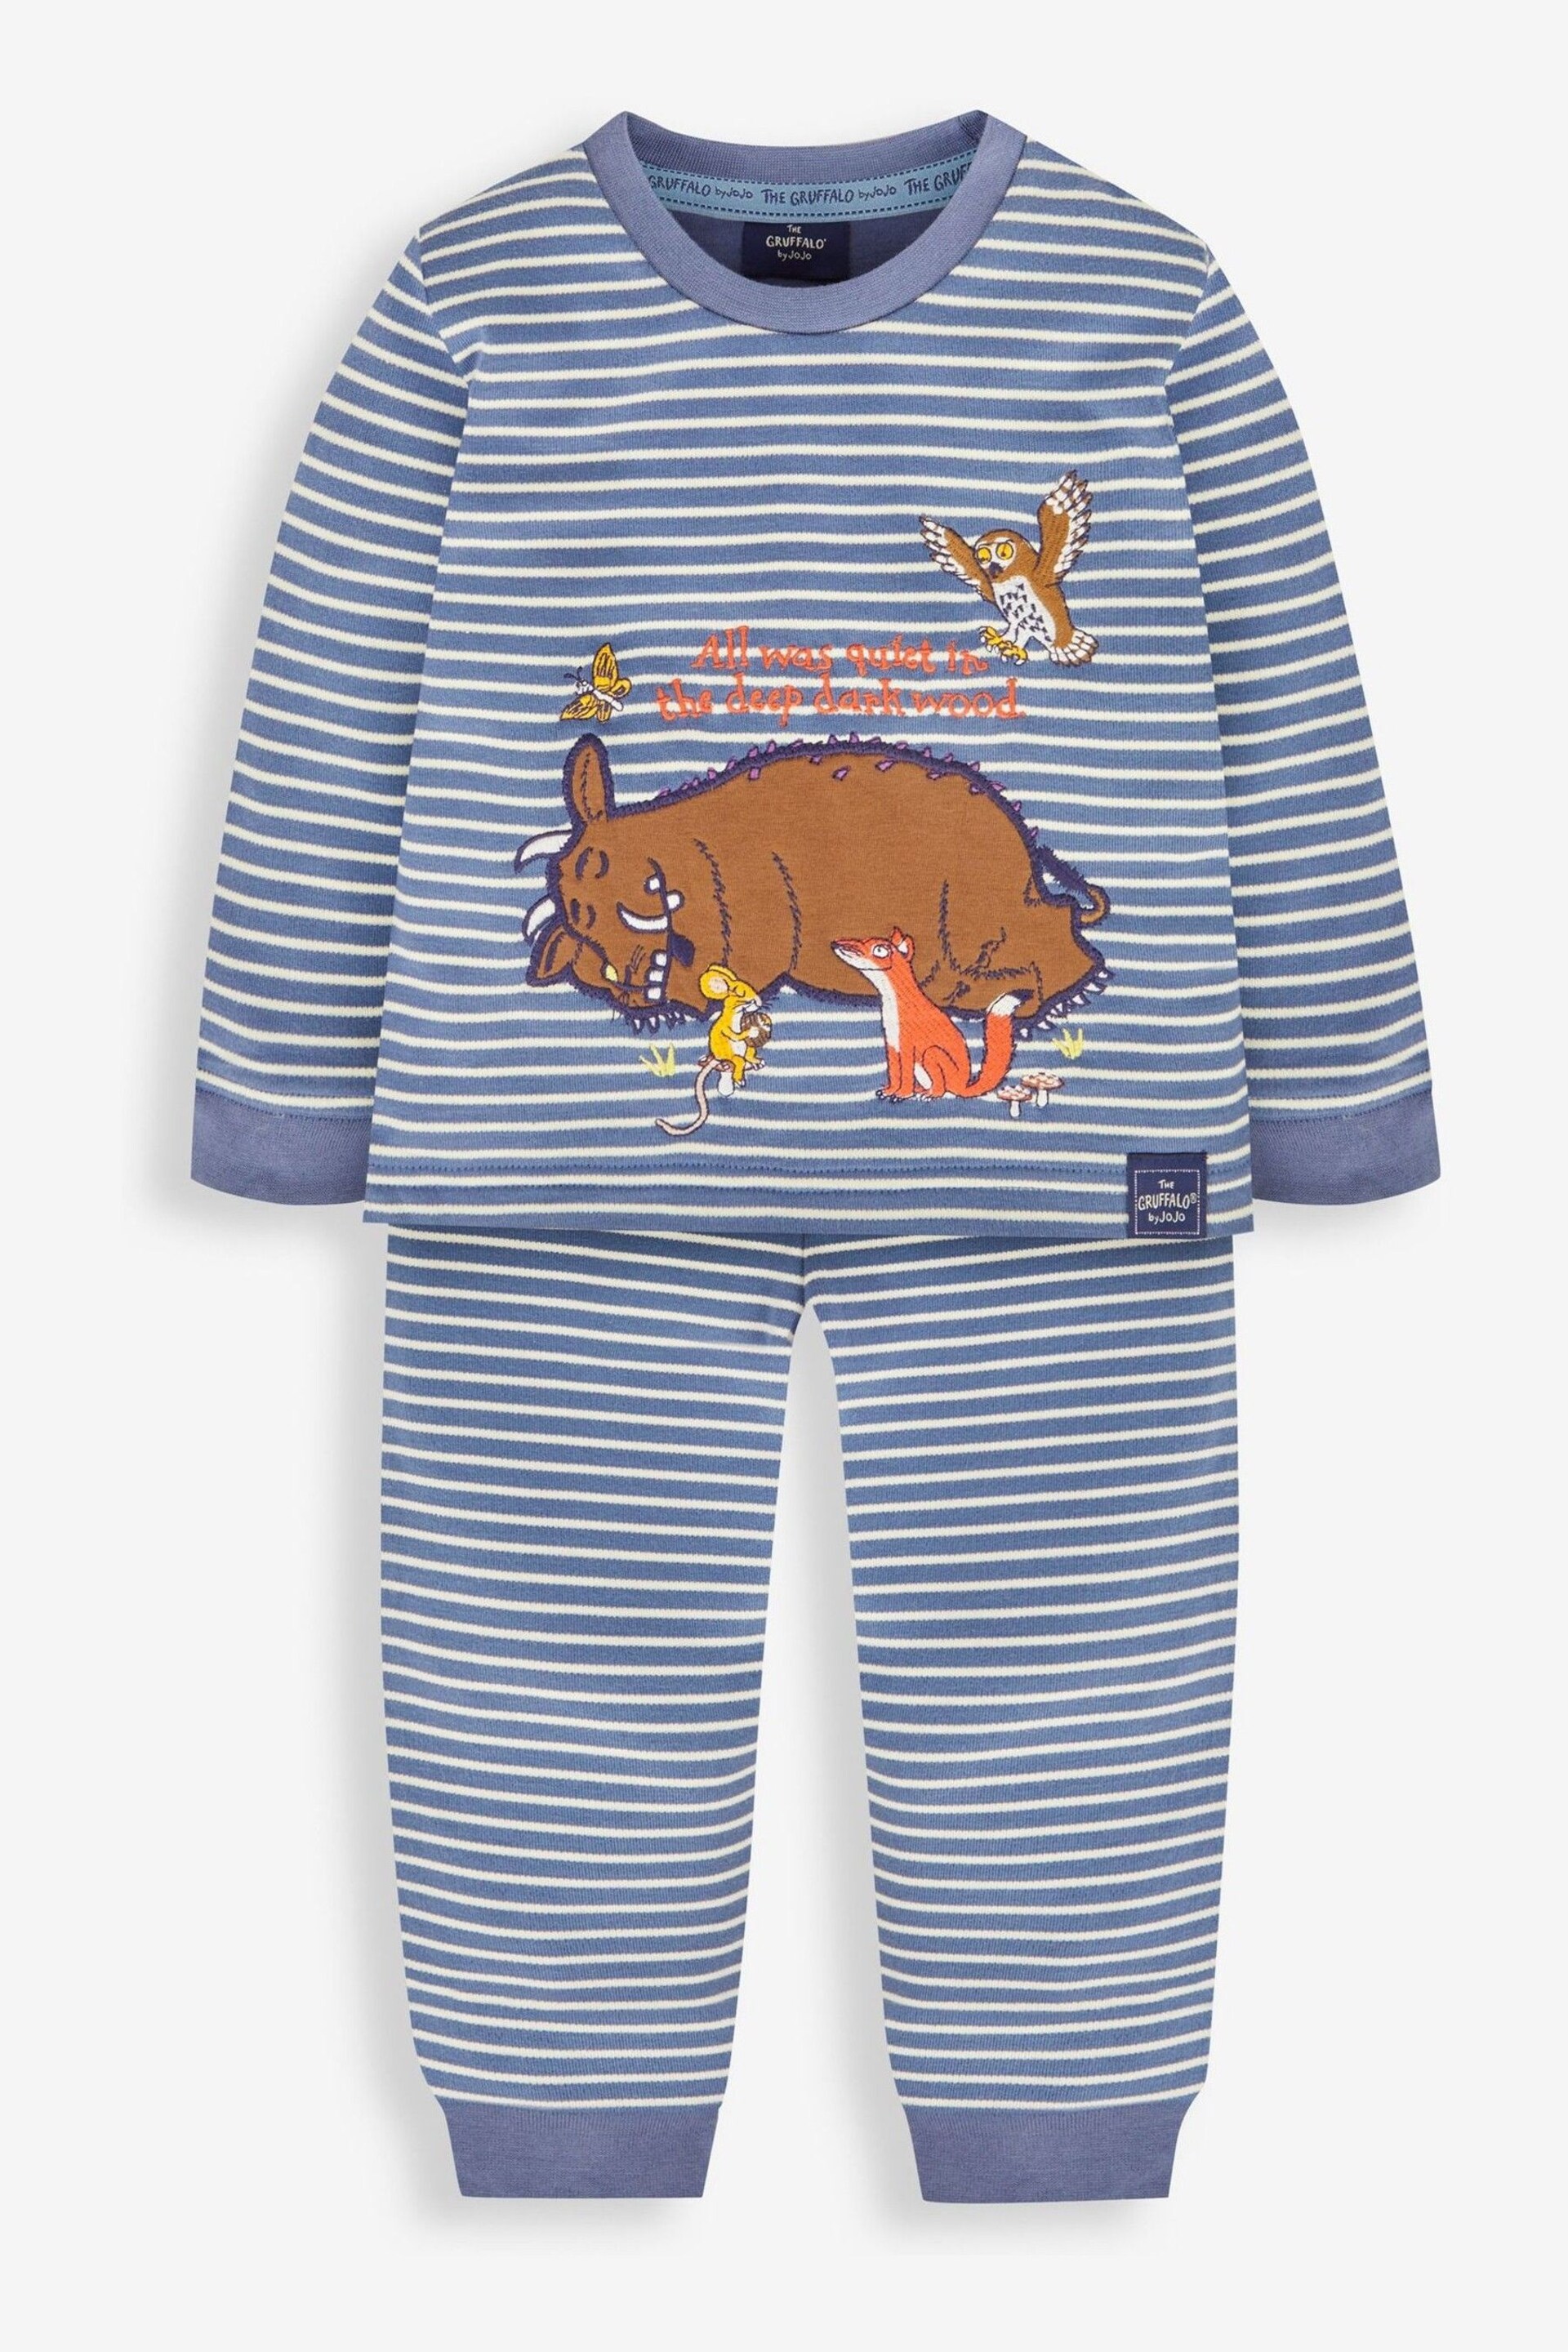 JoJo Maman Bébé Indigo Kids' The Gruffalo Jersey Pyjamas - Image 1 of 5